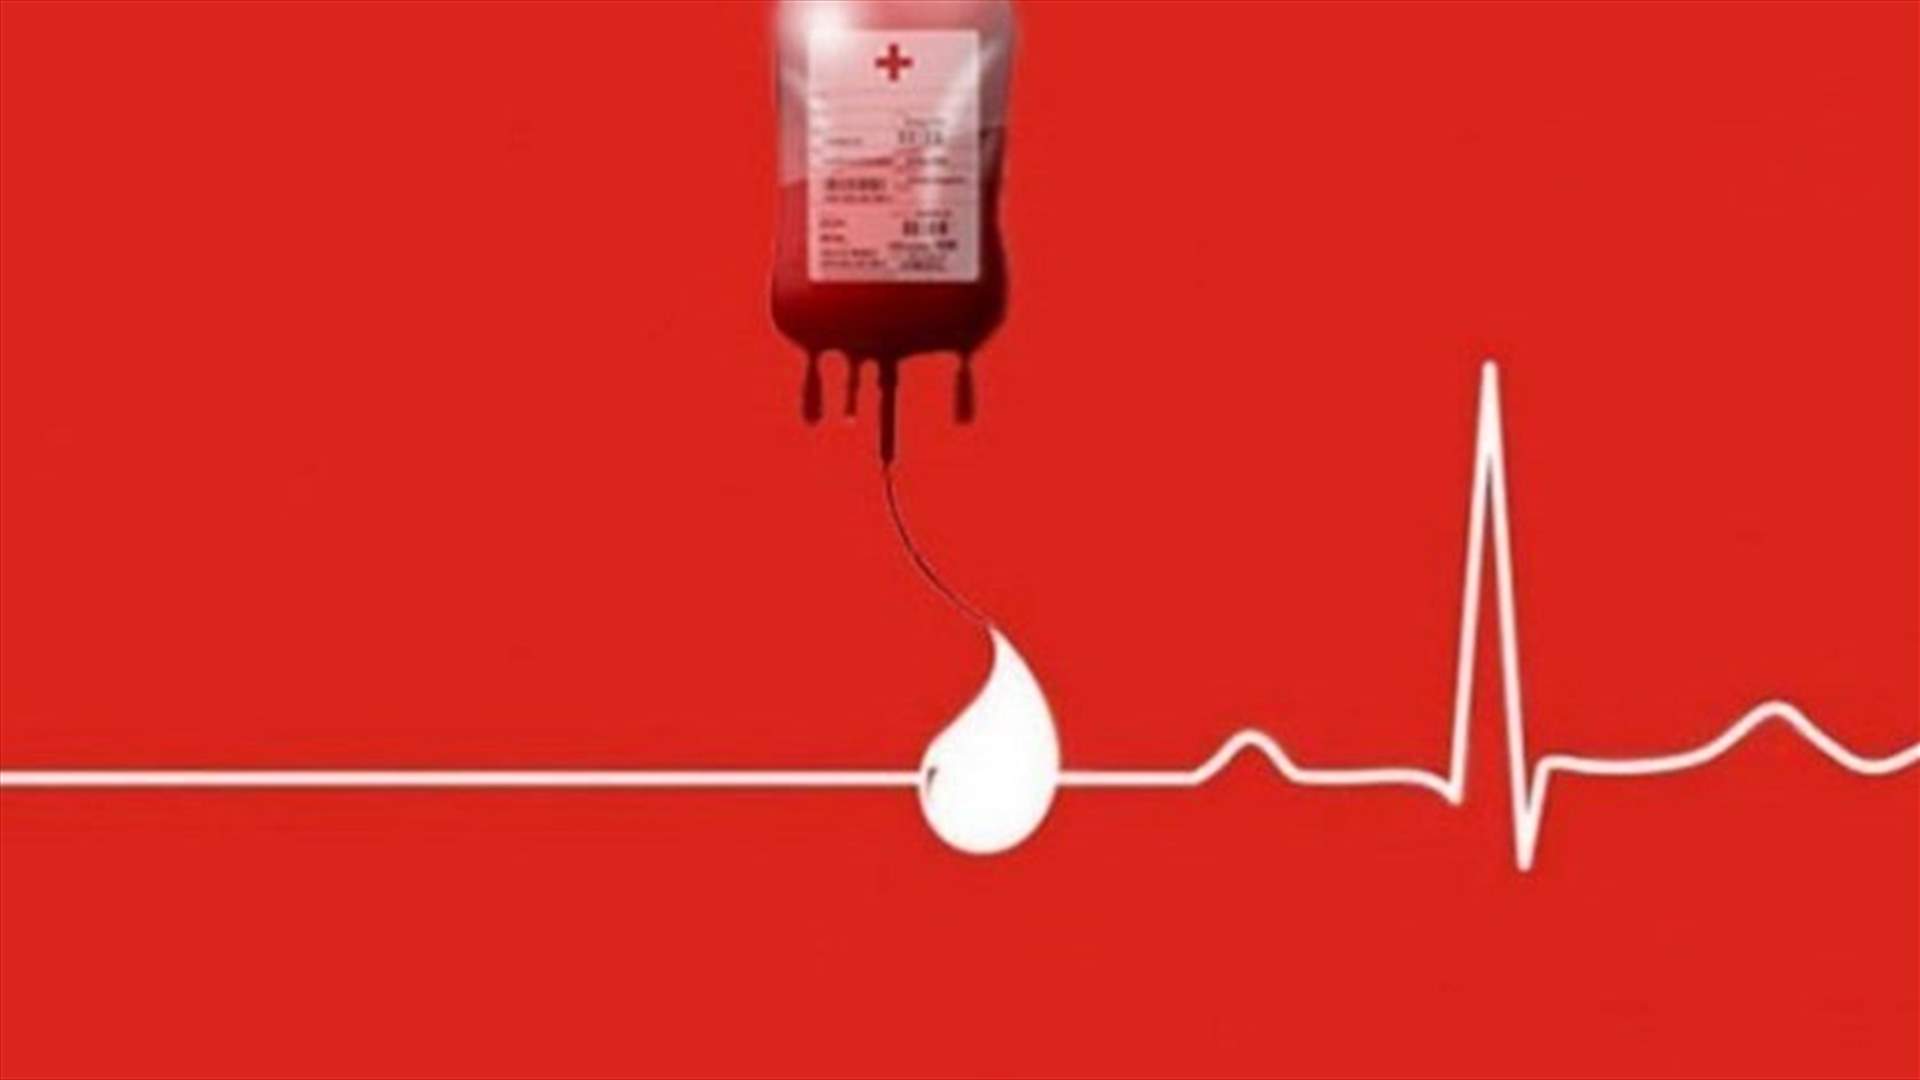 مريضة بحاجة ماسة لوحدات دم من فئة B+ في مستشفى جبل لبنان... للتبرع الرجاء الاتصال على الرقم التالي: 03310107